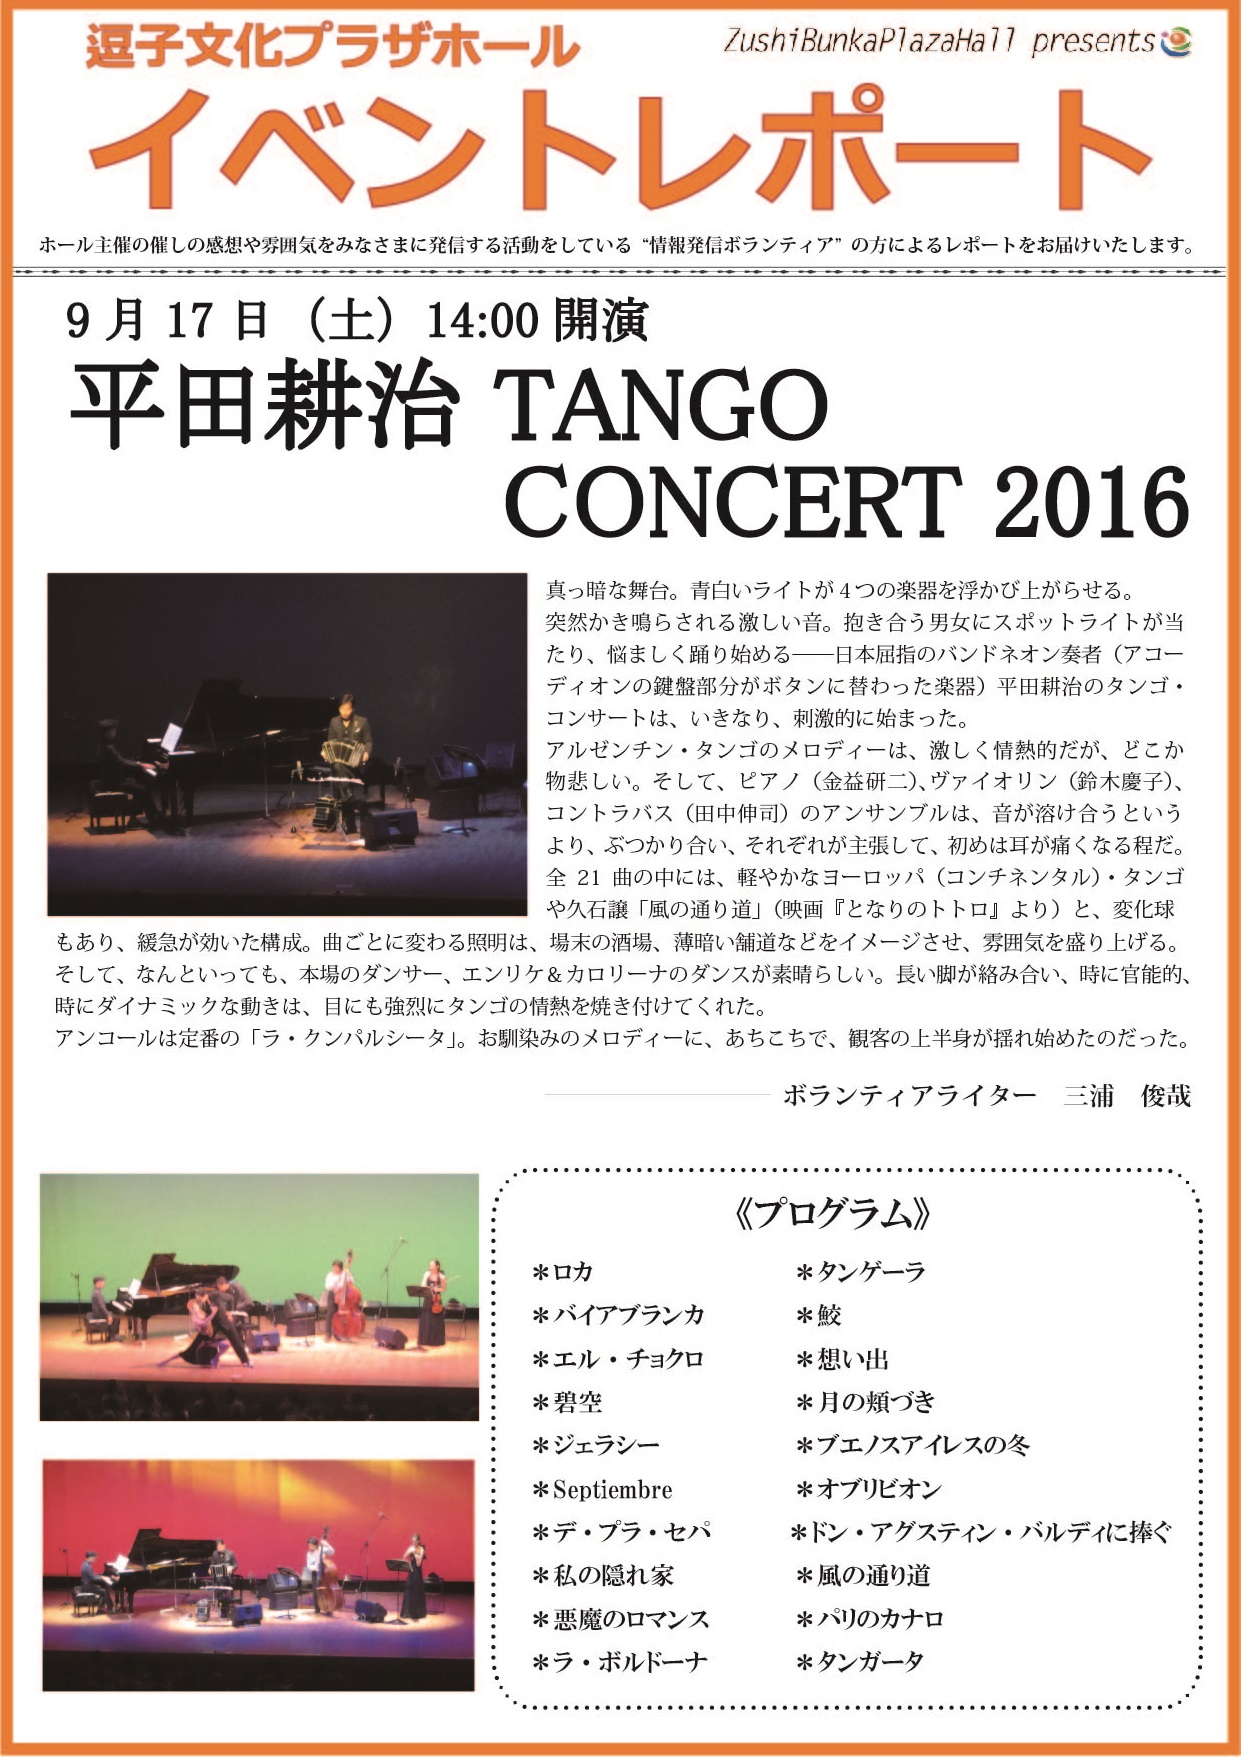 イベントレポート「平田耕治 TANGO CONCERT 2016」2016年9月17日（土）開催